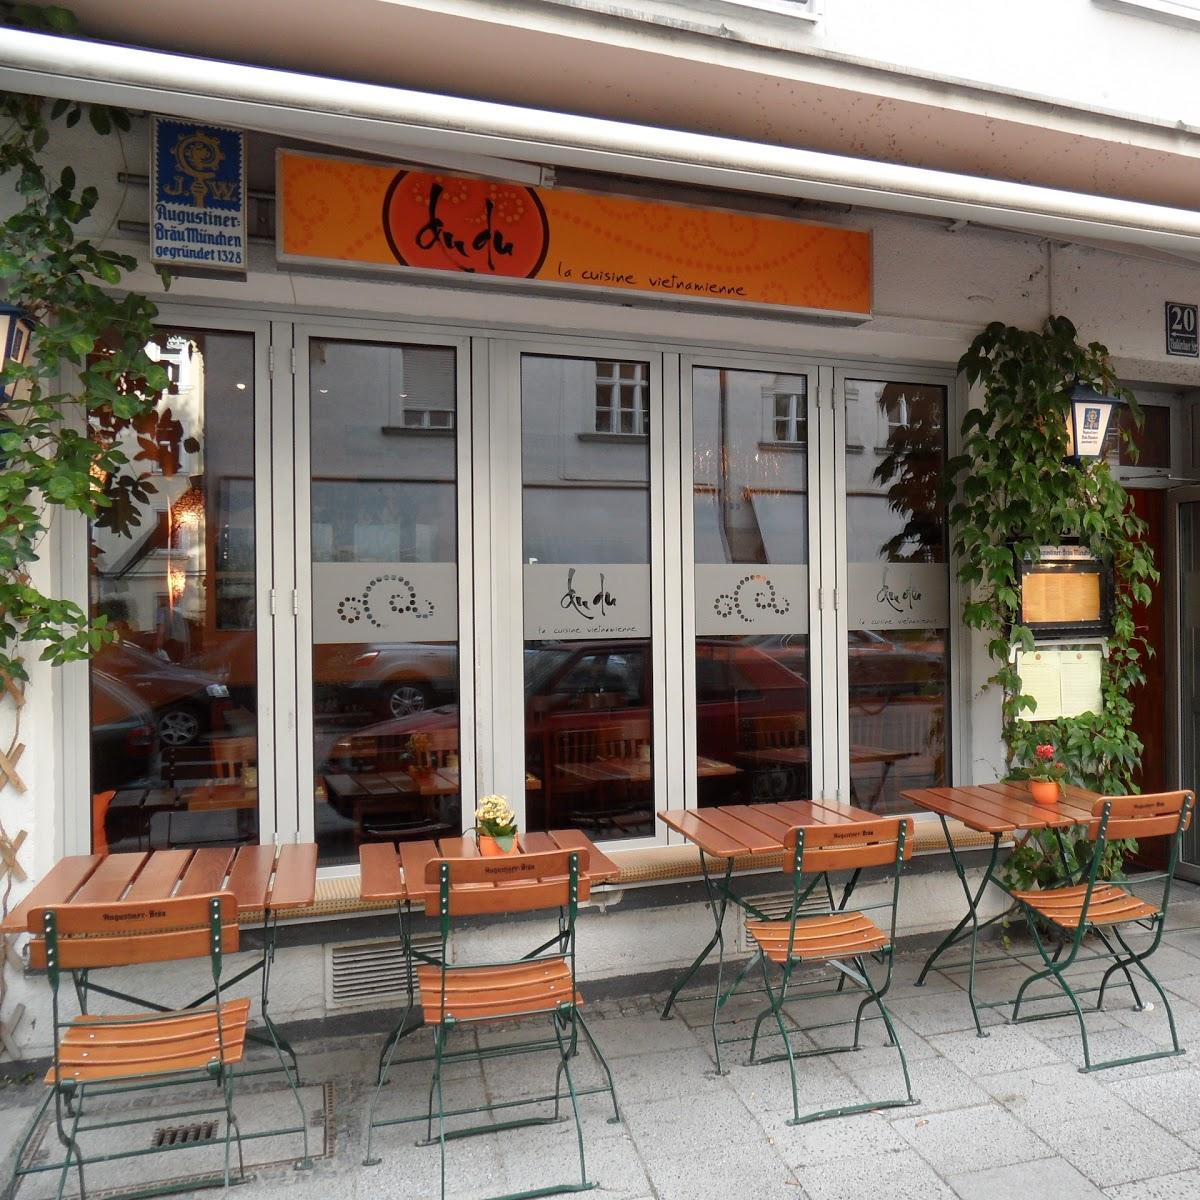 Restaurant "DuDu" in München